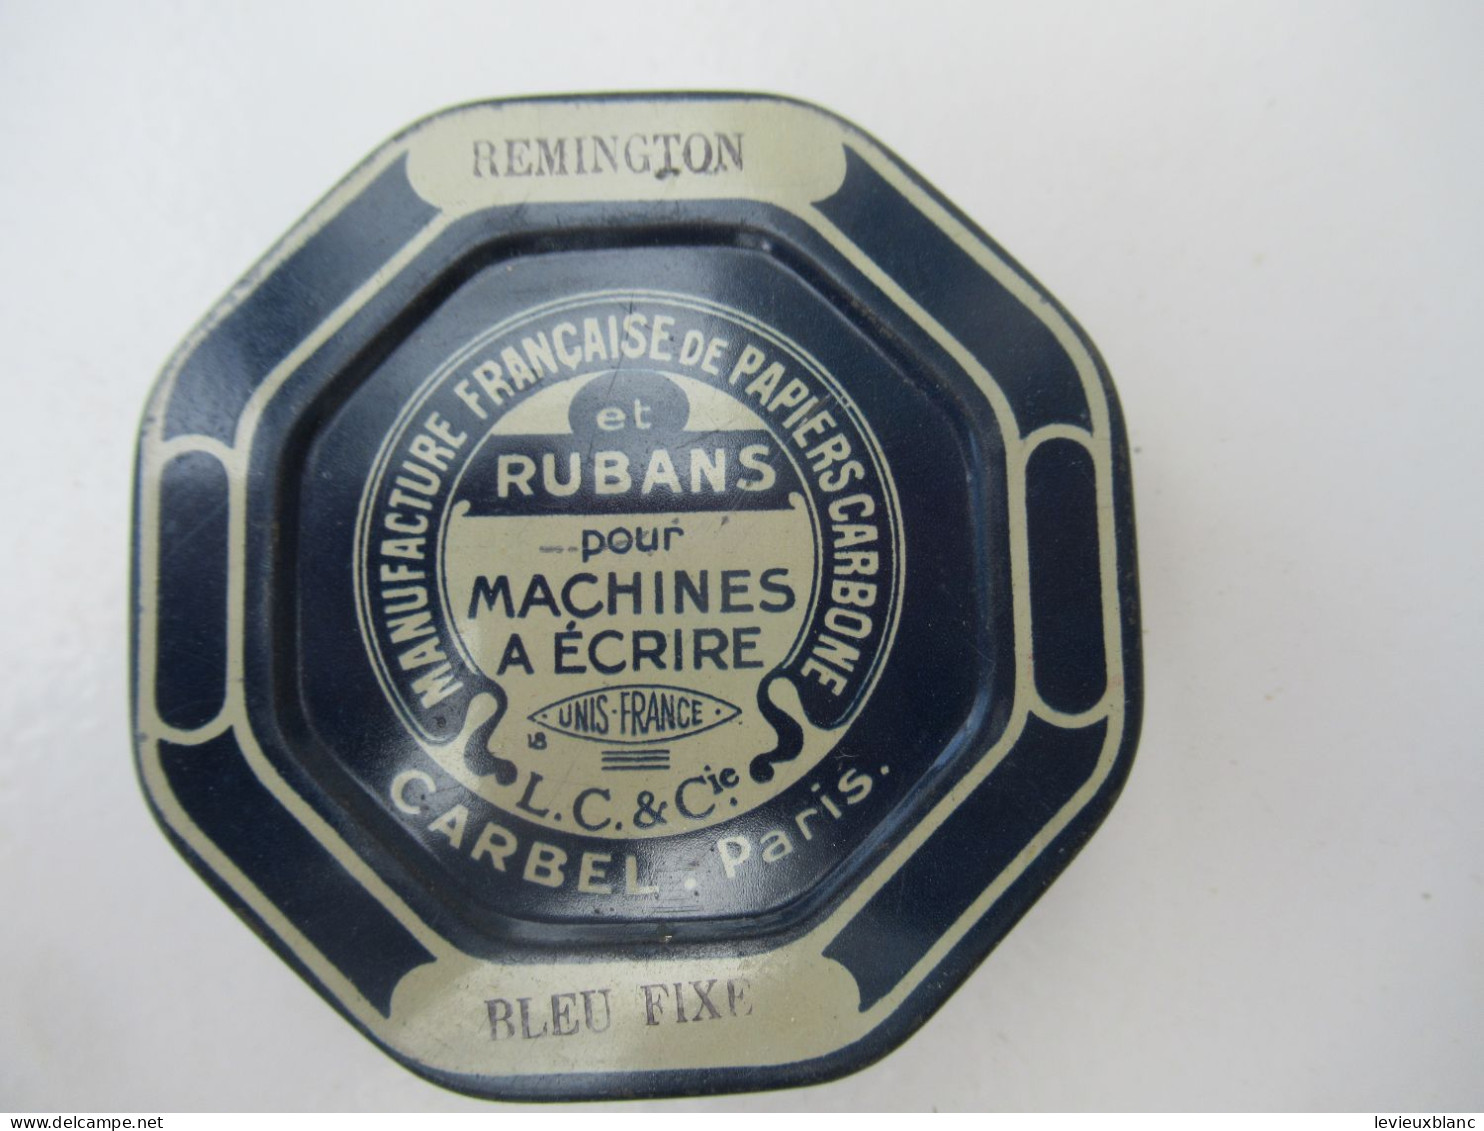 Ruban Pour Machine à écrire/REMINGTON/Manufacture Française De Papiers Carbones/ CARBEL/  Paris/Vers 1930-1960   BFPP254 - Cajas